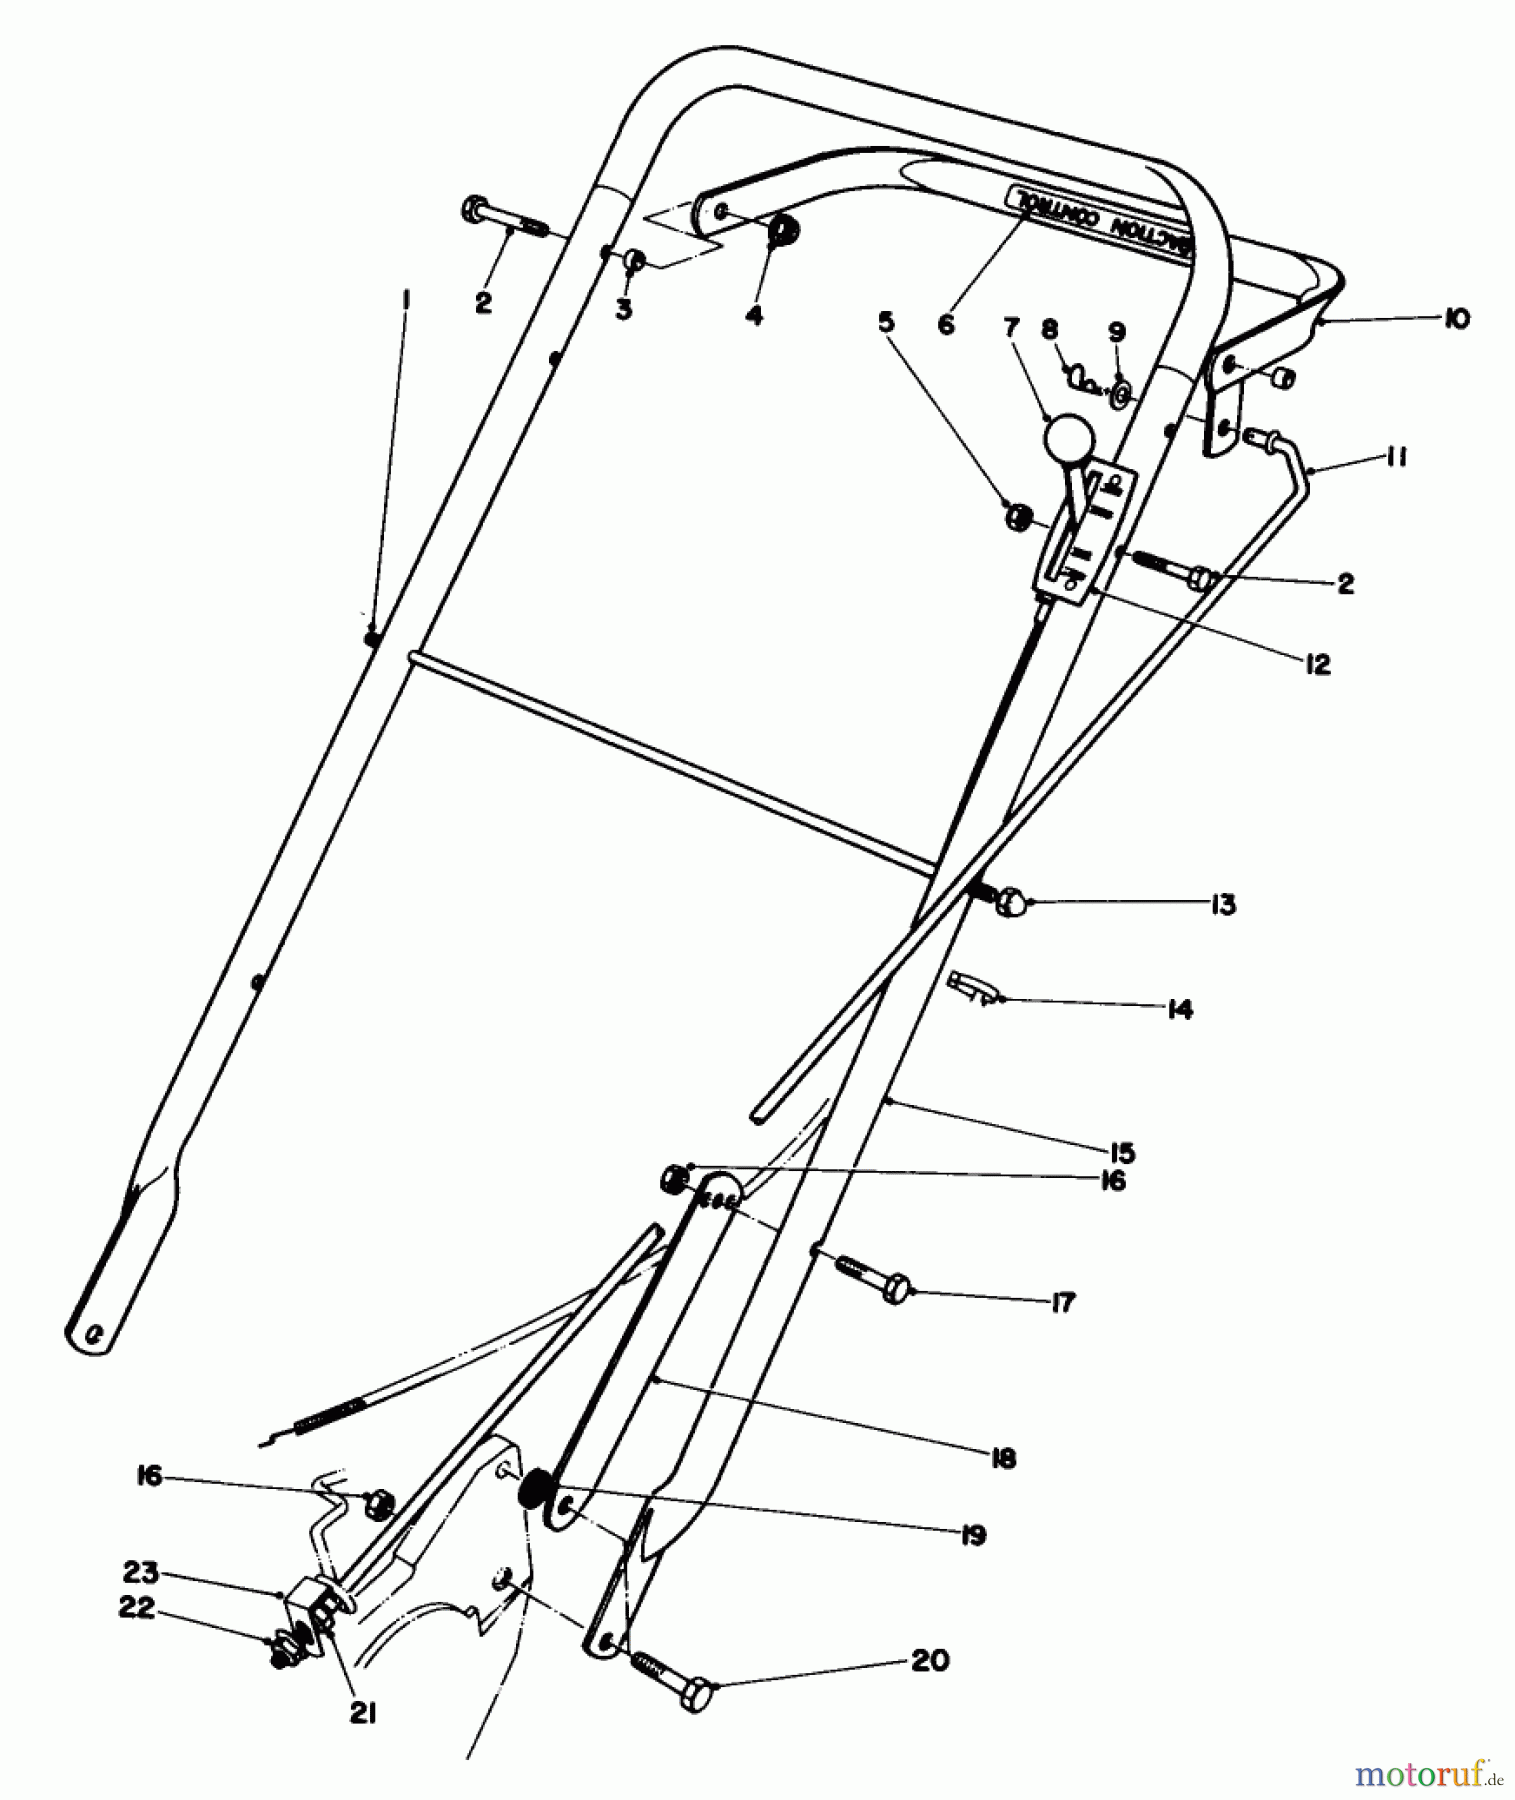  Toro Neu Mowers, Walk-Behind Seite 2 22020 - Toro Lawnmower, 1984 (4000001-4999999) HANDLE ASSEMBLY (MODEL 22020)